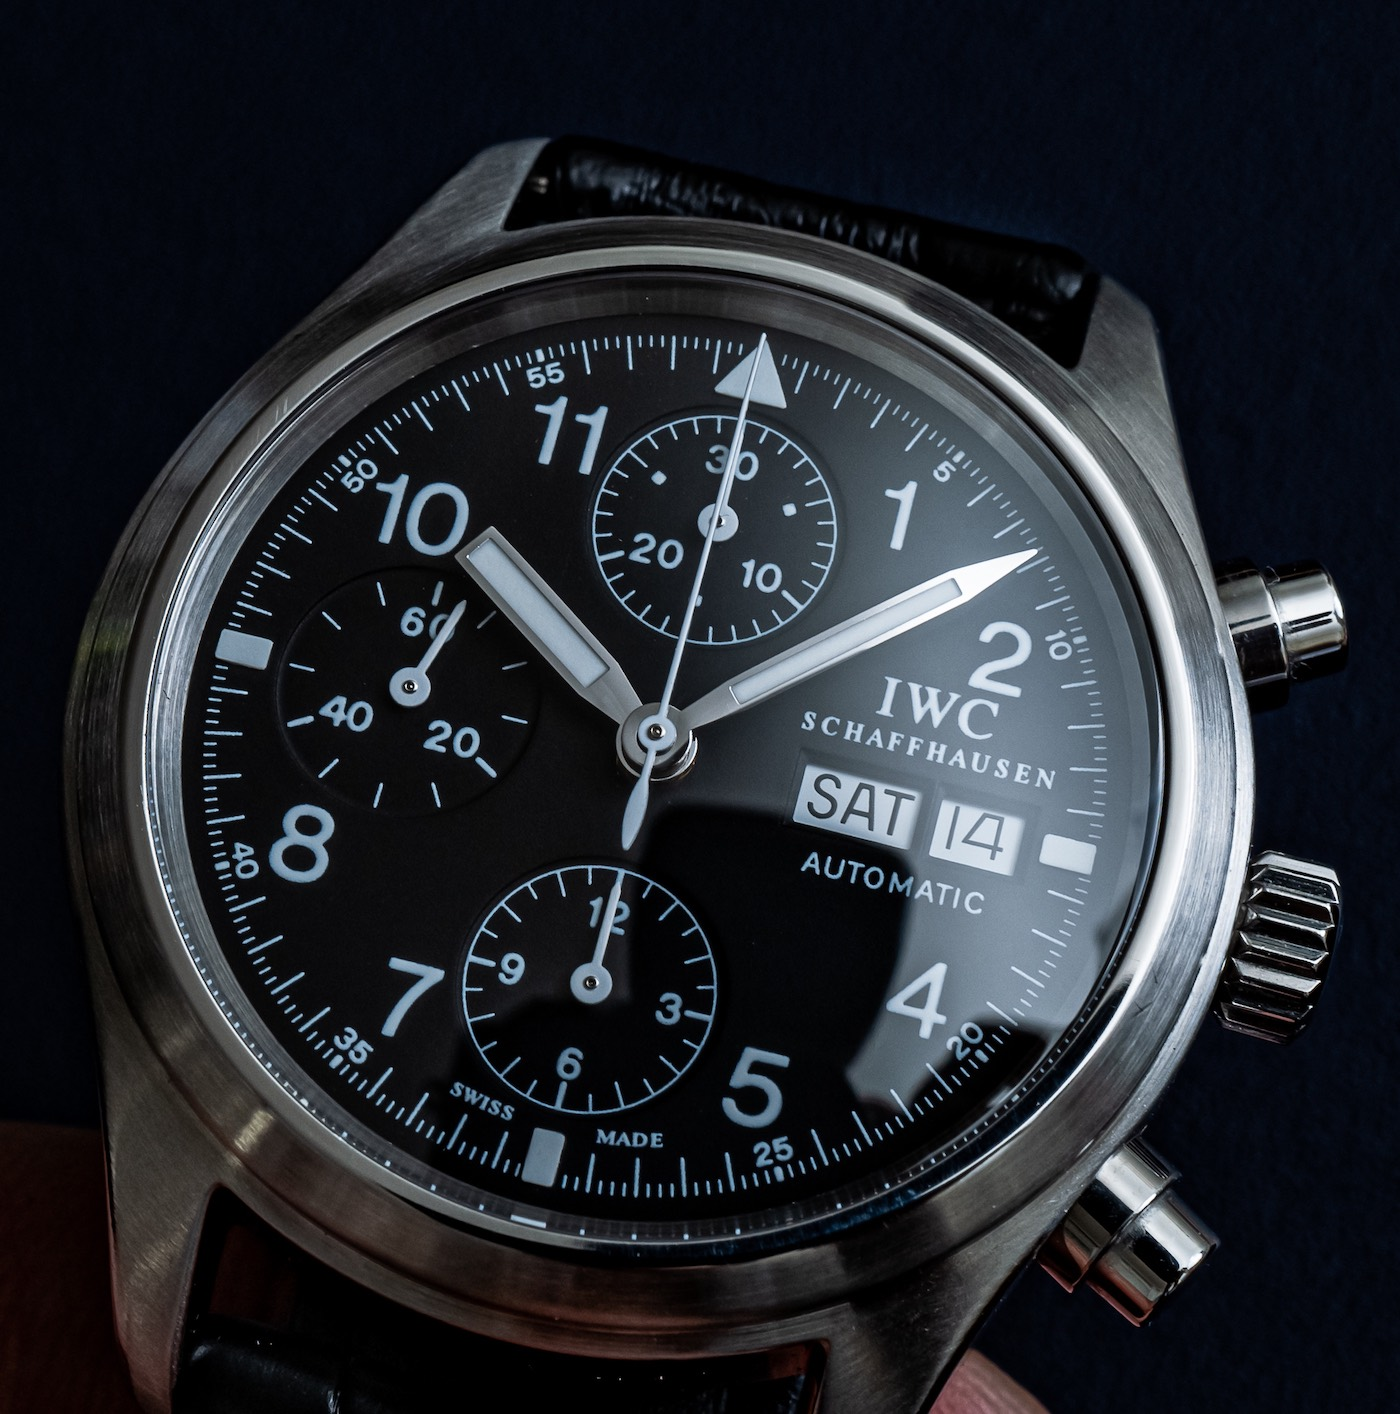 国际捕鲸委员会飞行员的手表计时裁判3706如何